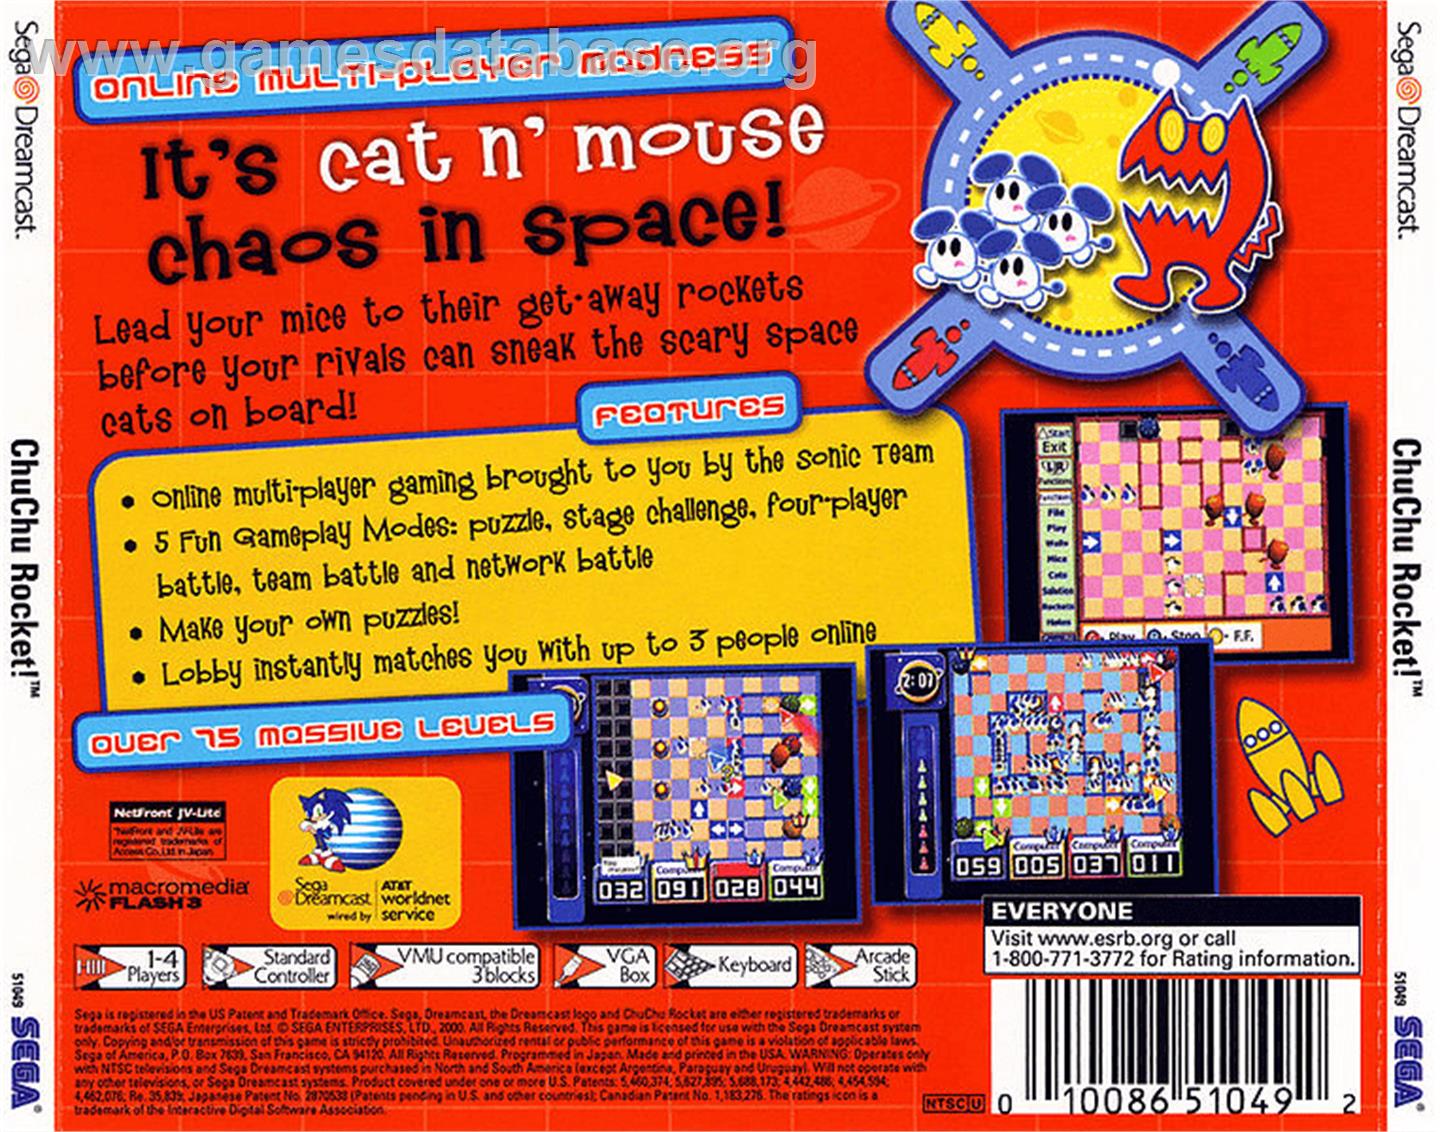 ChuChu Rocket - Sega Dreamcast - Artwork - Box Back